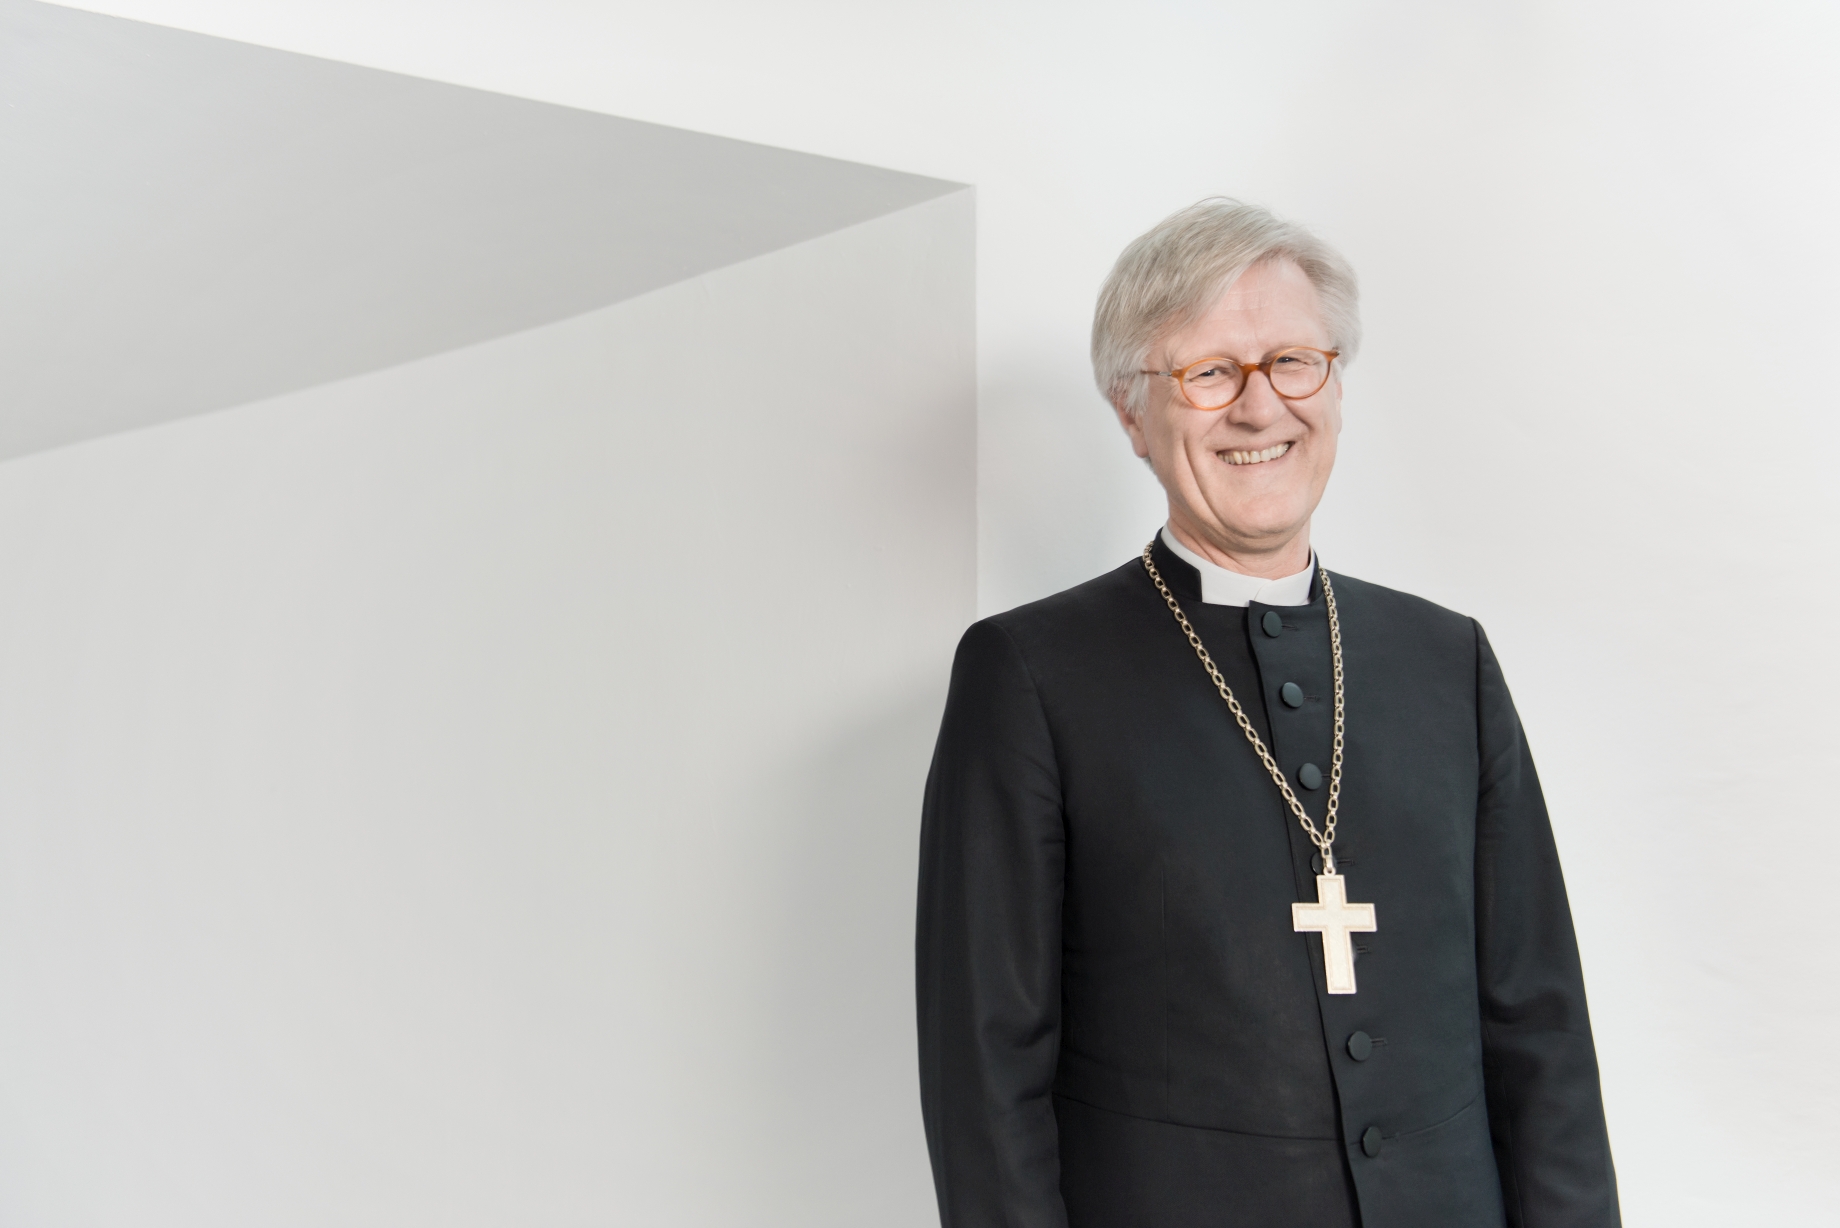 Heinrich Bedford-Strohm Vorsitzender des Rates der Evangelischen Kirche in Deutschland (EKD) und Landesbischof der Evangelisch-Lutherischen Kirche in Bayern.